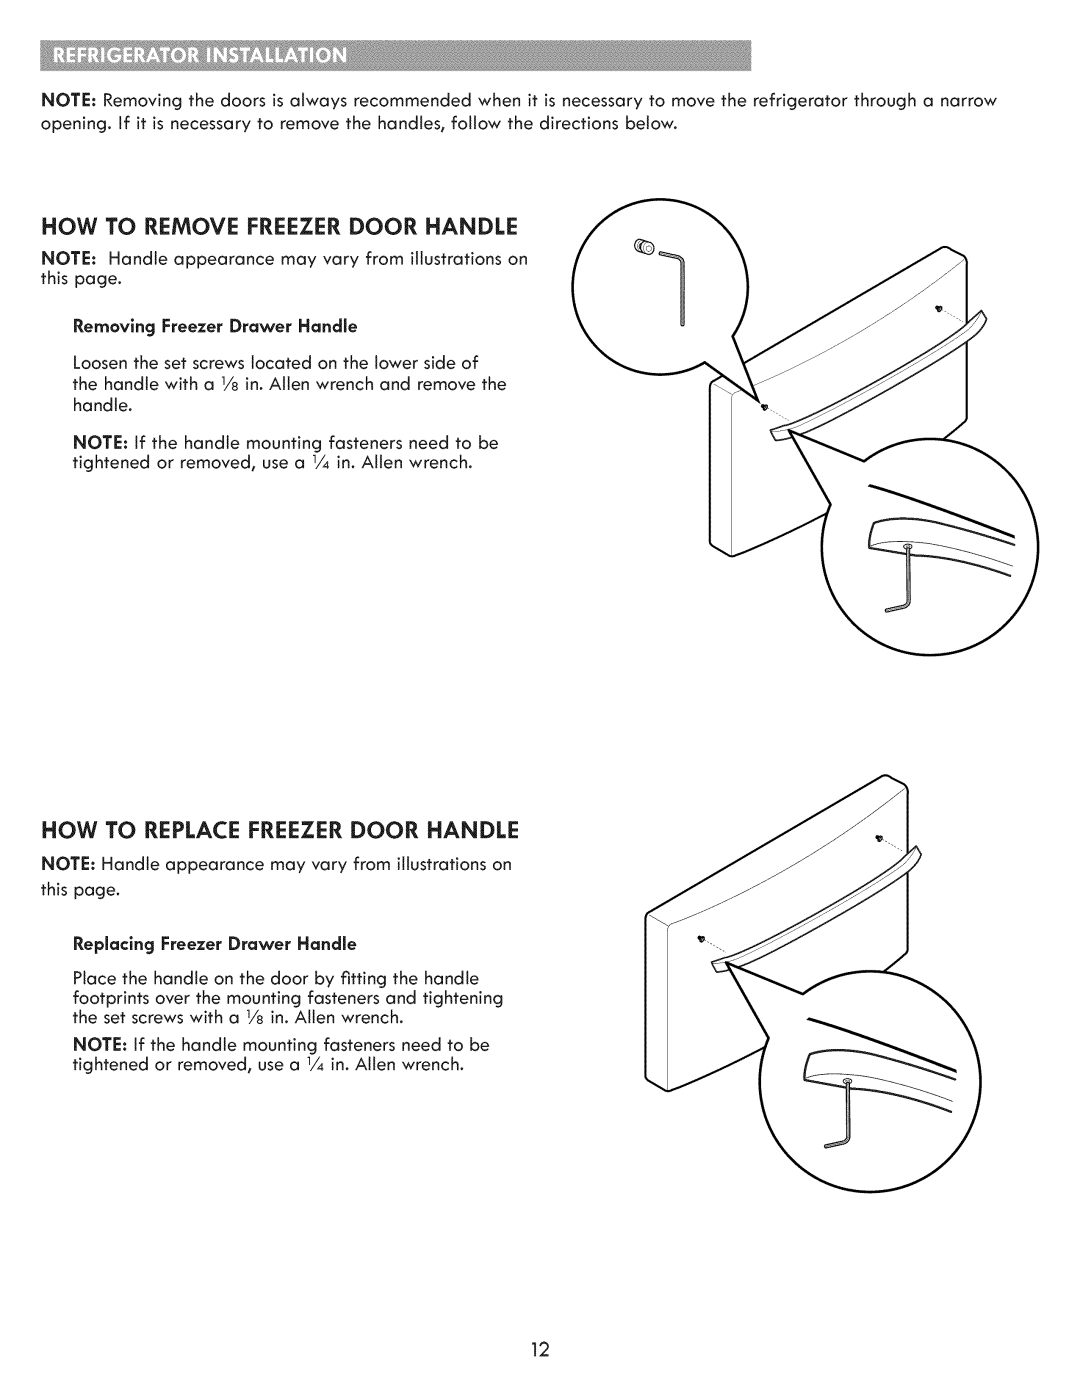 Kenmore 795.7202 How To Remove Freezer Door Handle, How To Replace Freezer Door Handle, Removing Freezer Drawer Handle 